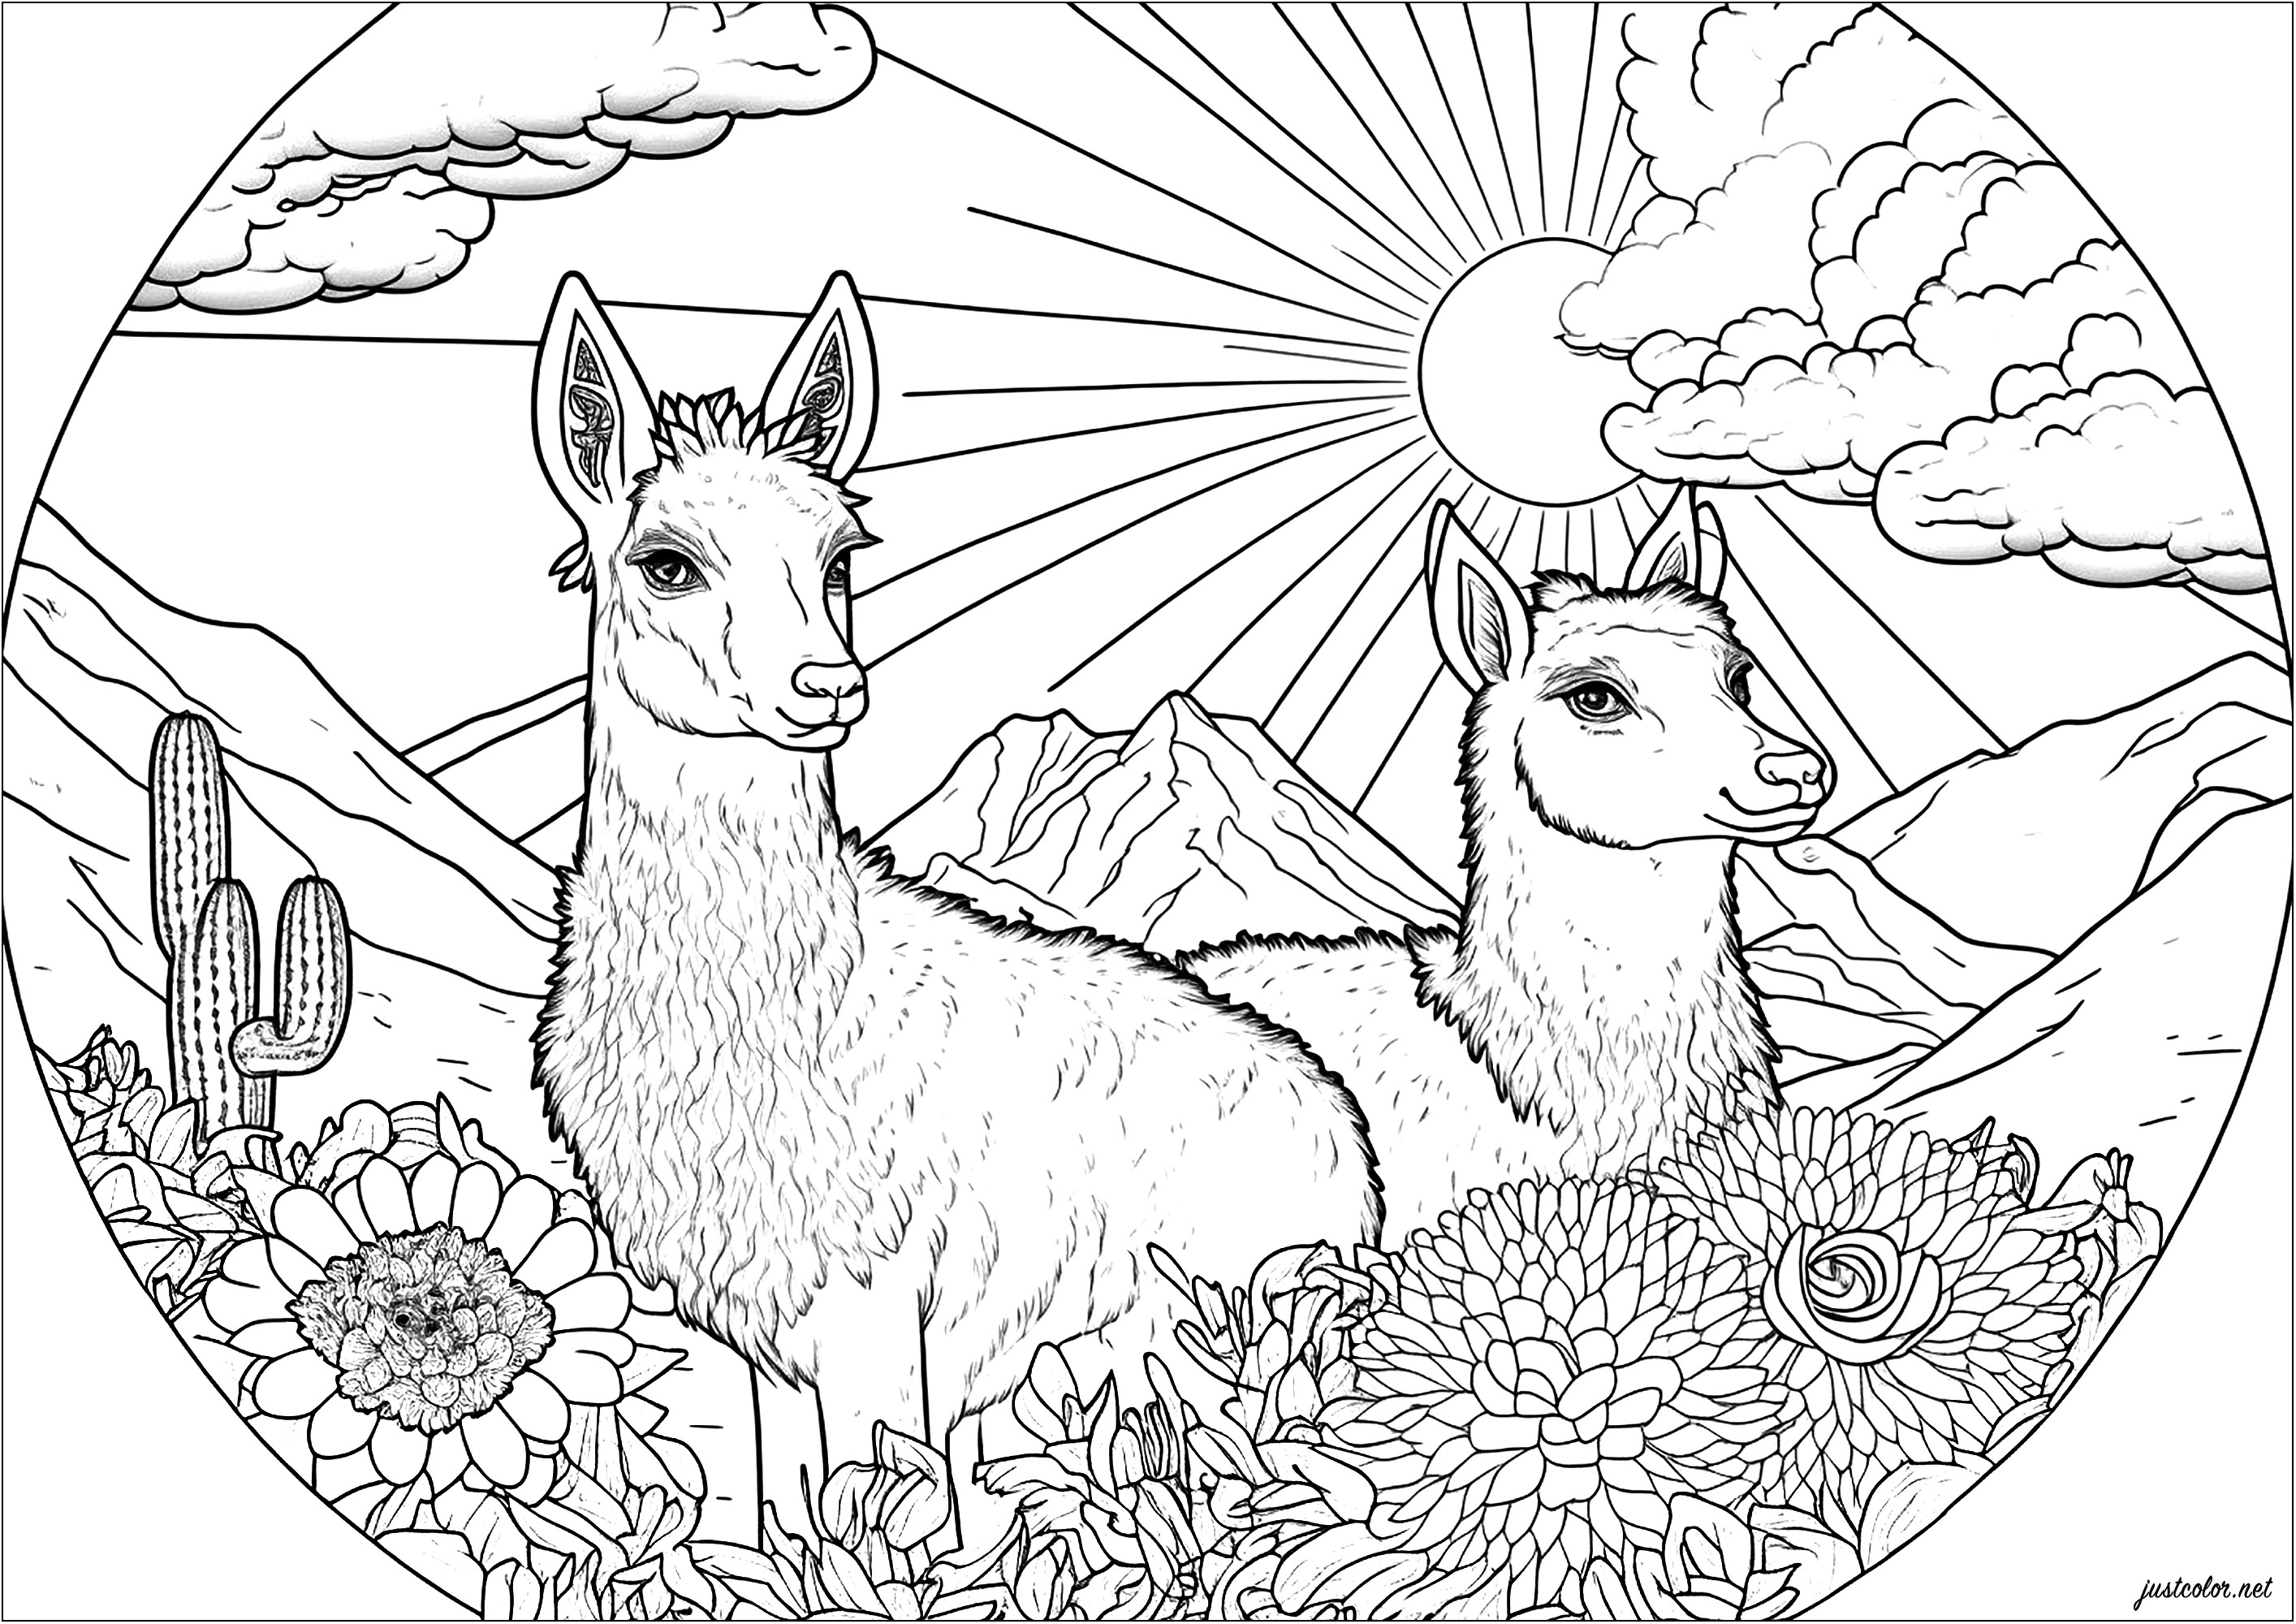 Deux lamas sur un terrain luxuriant, en train de profiter de la chaleur du soleil. Ce coloriage est absolument magnifique! Il représente deux lamas mignons et joyeux, entourés de fleurs multicolores et d'un soleil brillant. La composition est très harmonieuse et donne à ce coloriage une atmosphère de paix et de sérénité, Artiste : IAsabelle